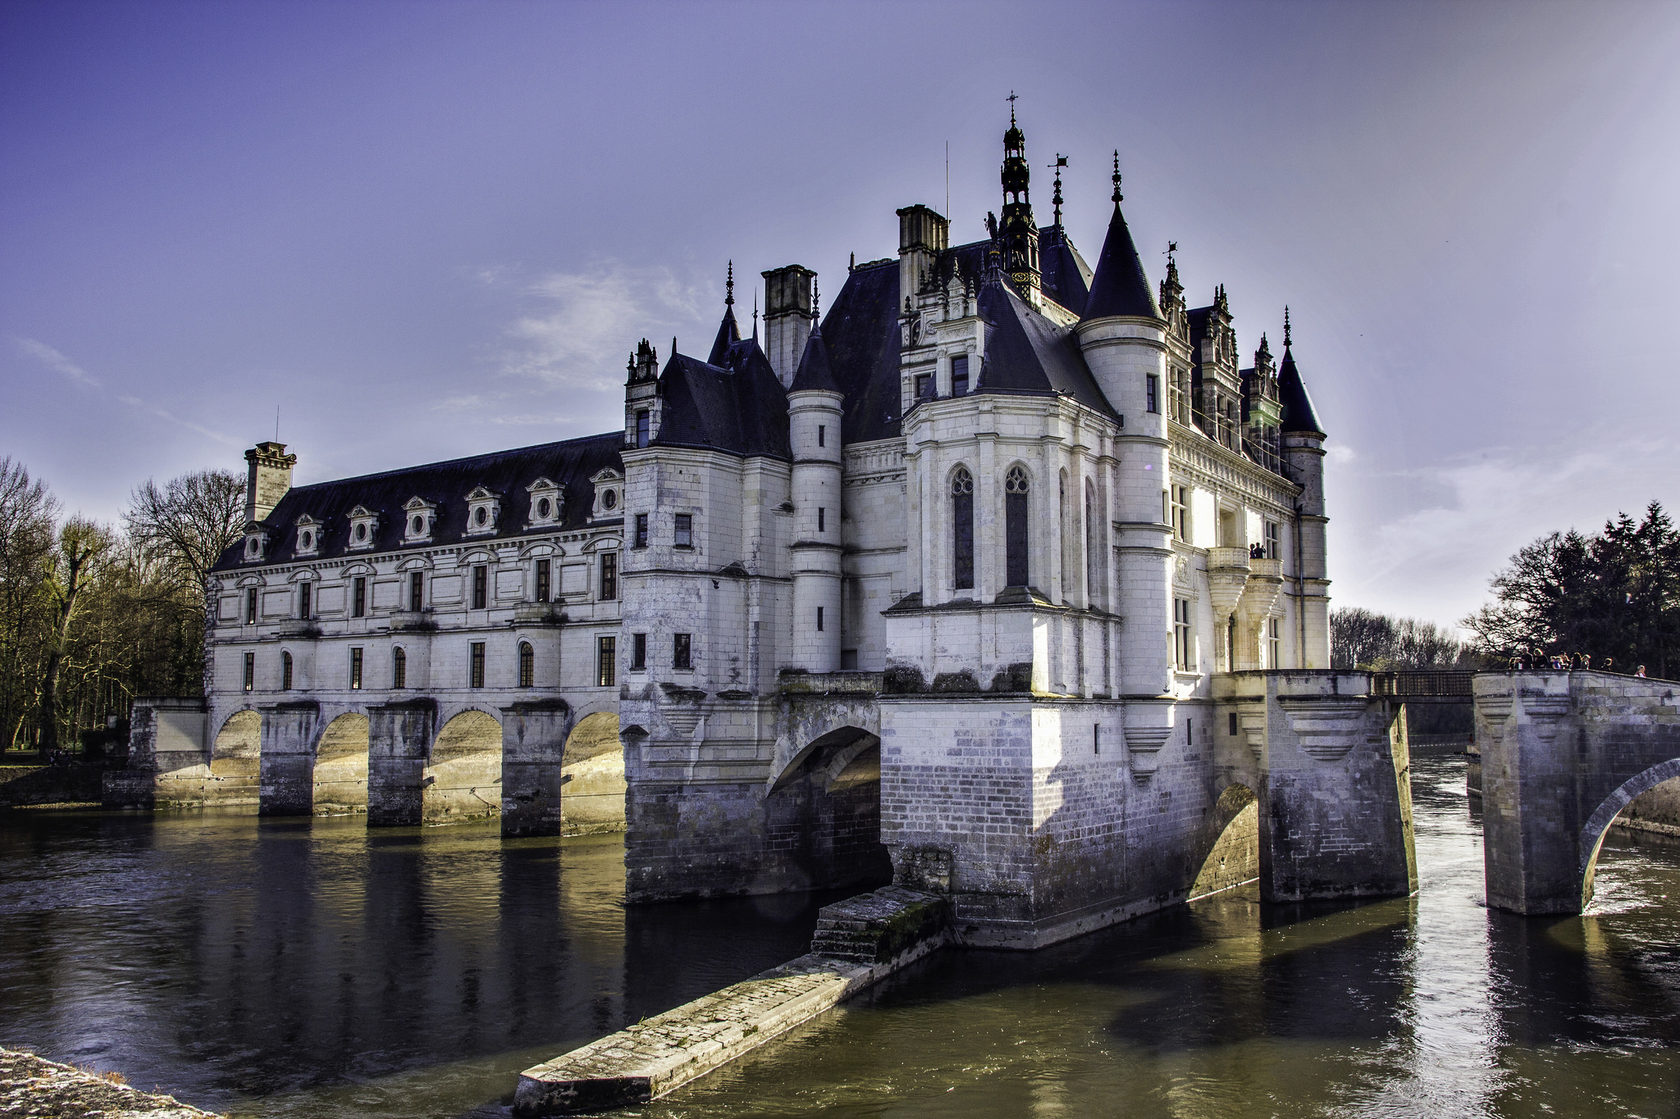 Франция замок на луаре